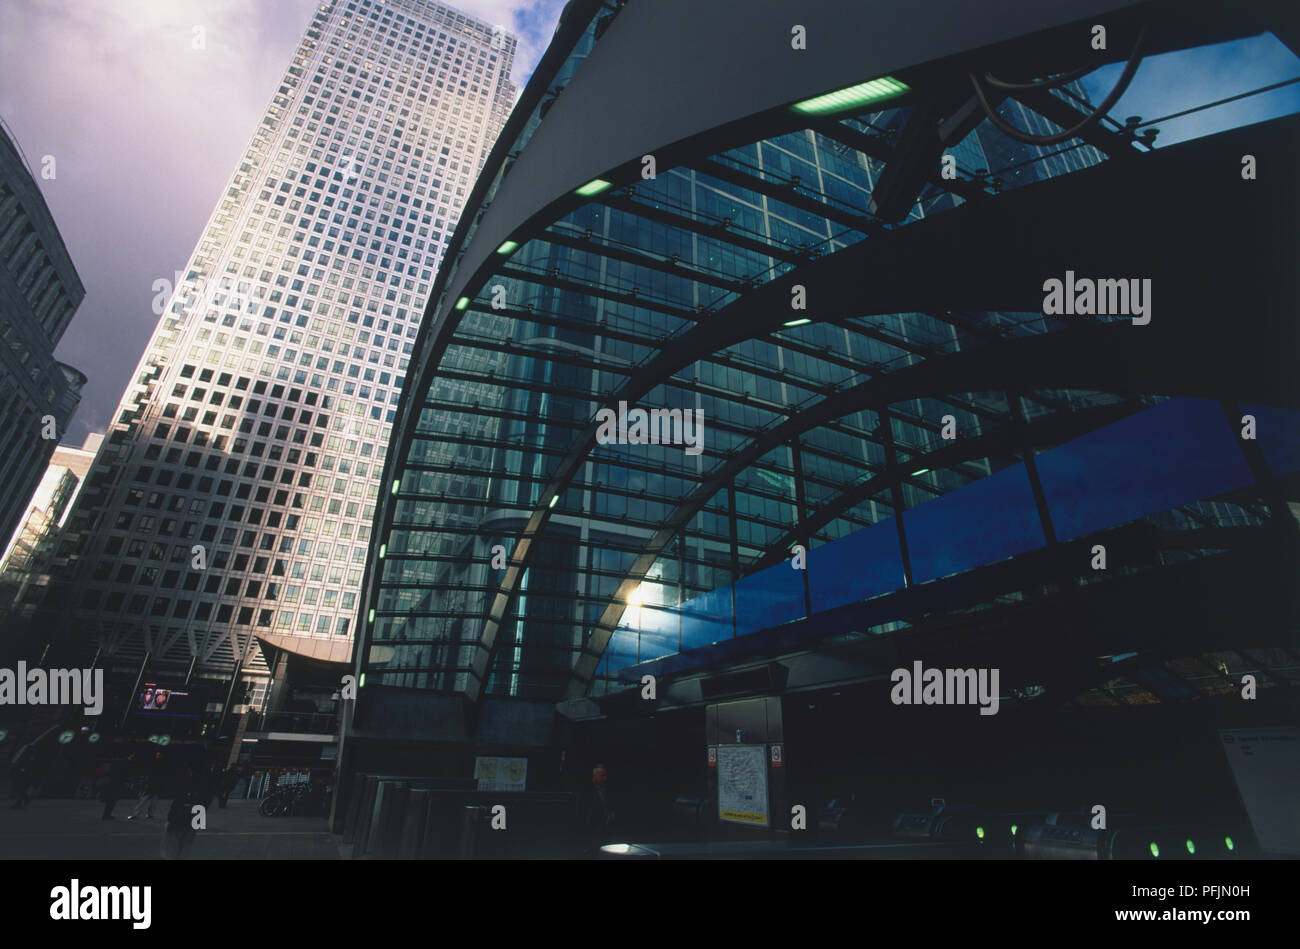 Gran Bretagna, Inghilterra, Londra, Canary Wharf, tetto in vetro ingresso alla stazione, Canary Wharf Tower in background Foto Stock